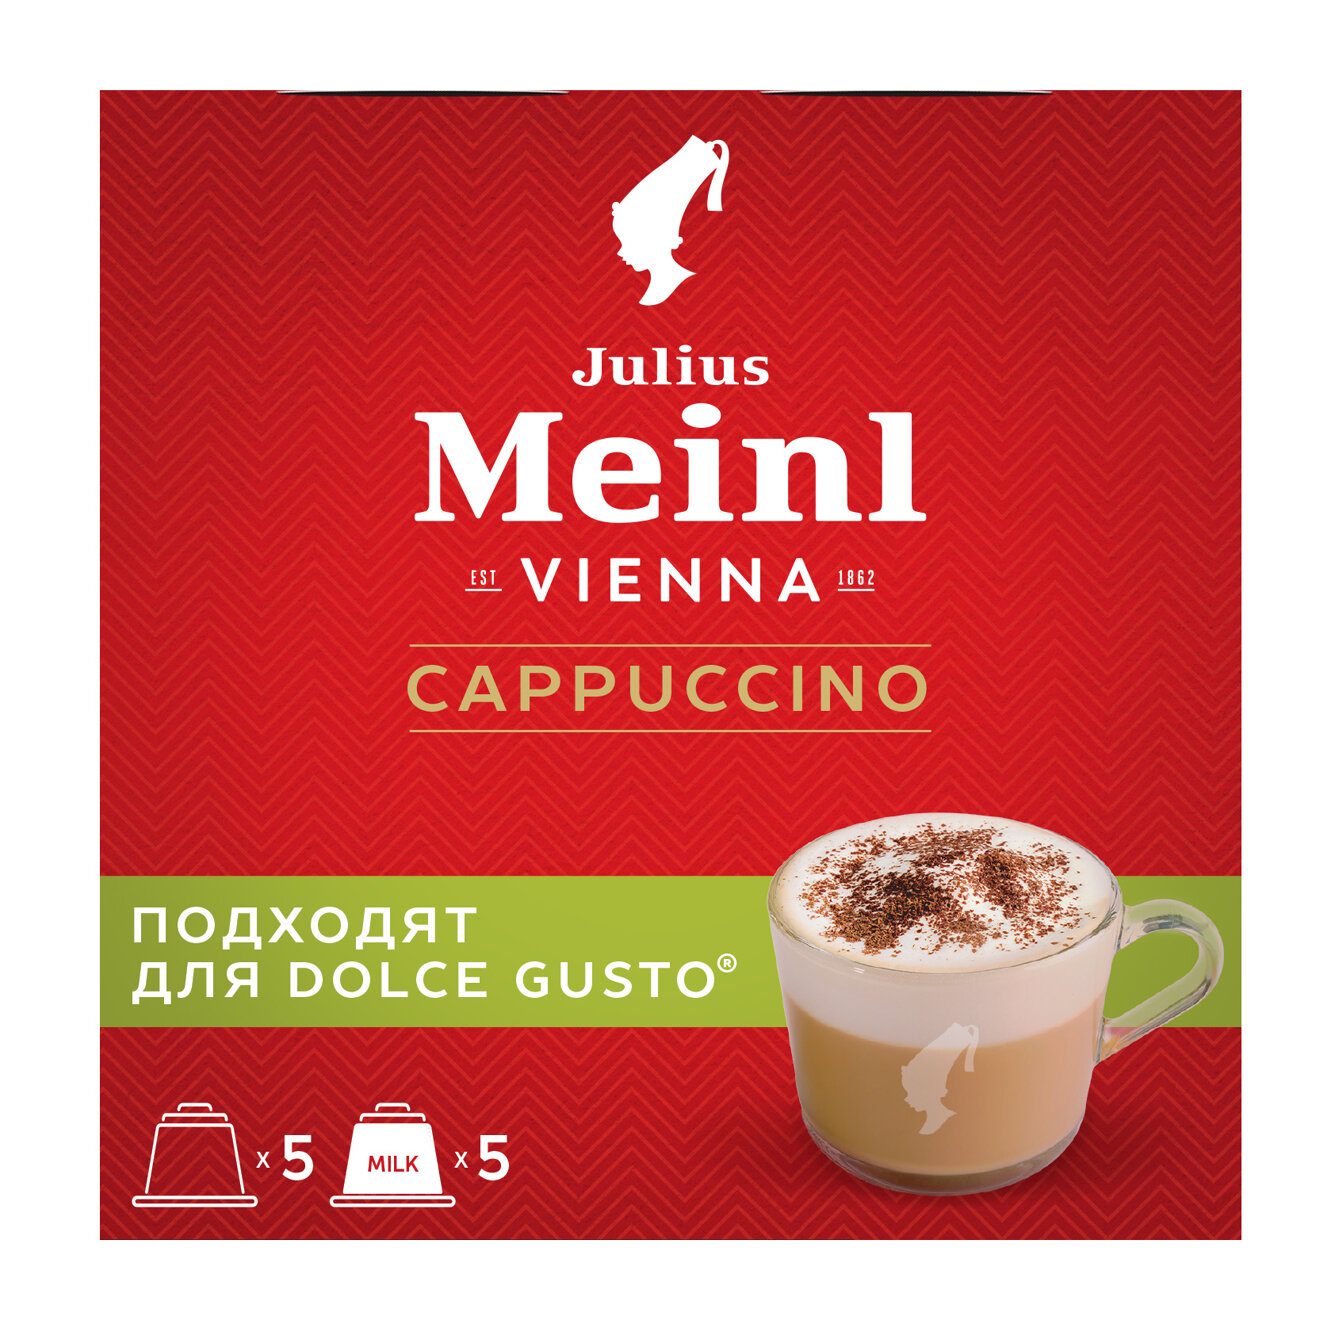 Кофе в капсулах Julius Meinl Капучино для кофемашин Dolce Gusto (Дольче Густо) 5 порций 10 капсул